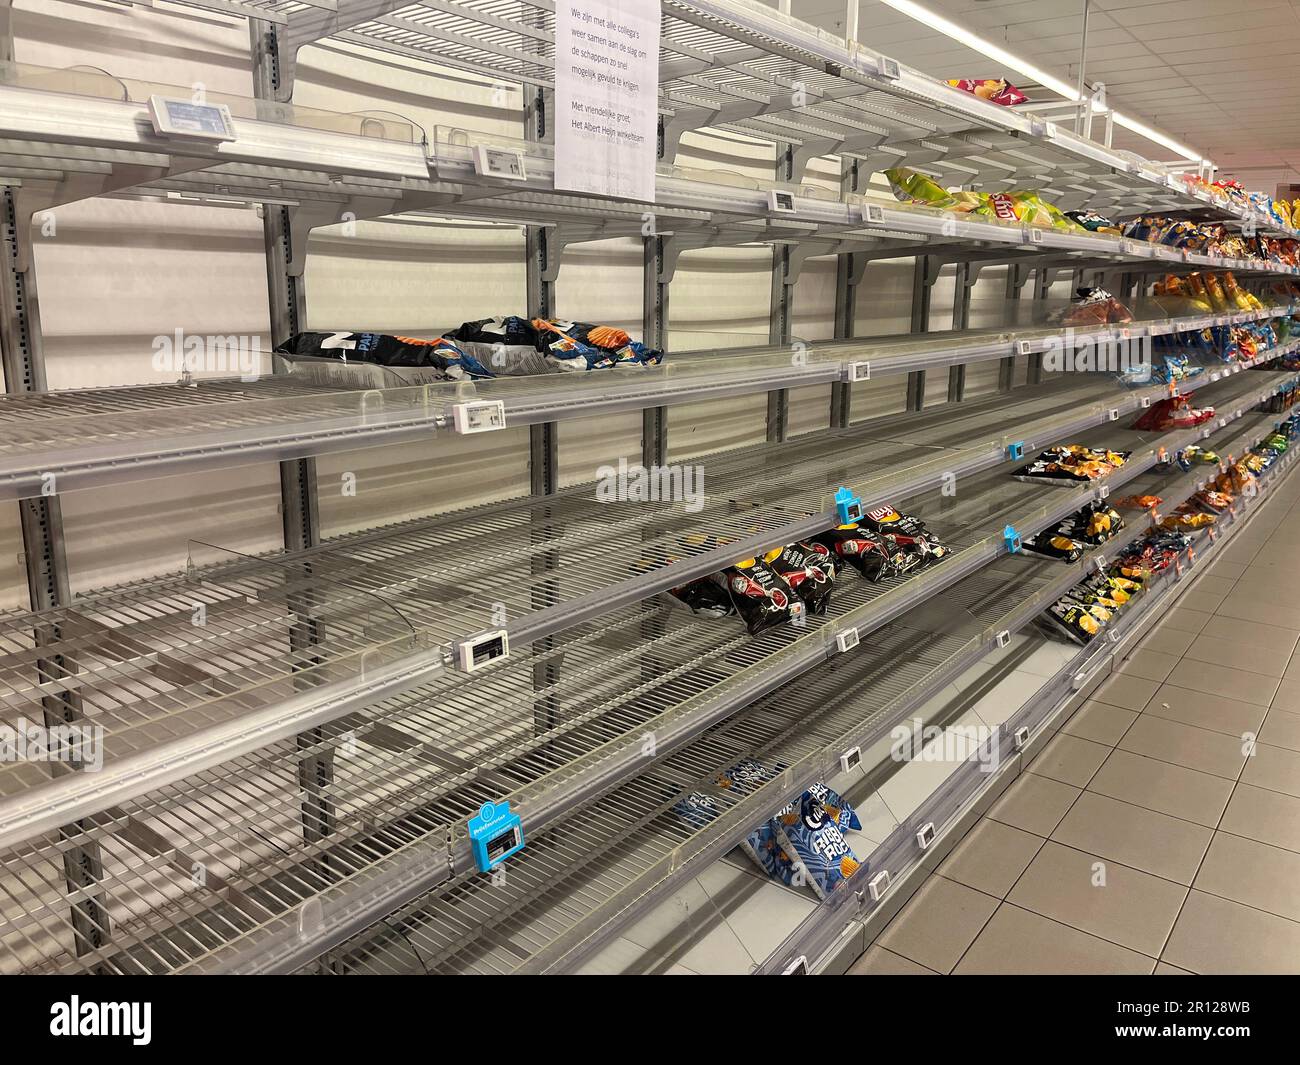 Prezzi senza prodotto all'angolo della frutta con casse vuote nel supermercato olandese durante uno sciopero del centro di distribuzione Foto Stock